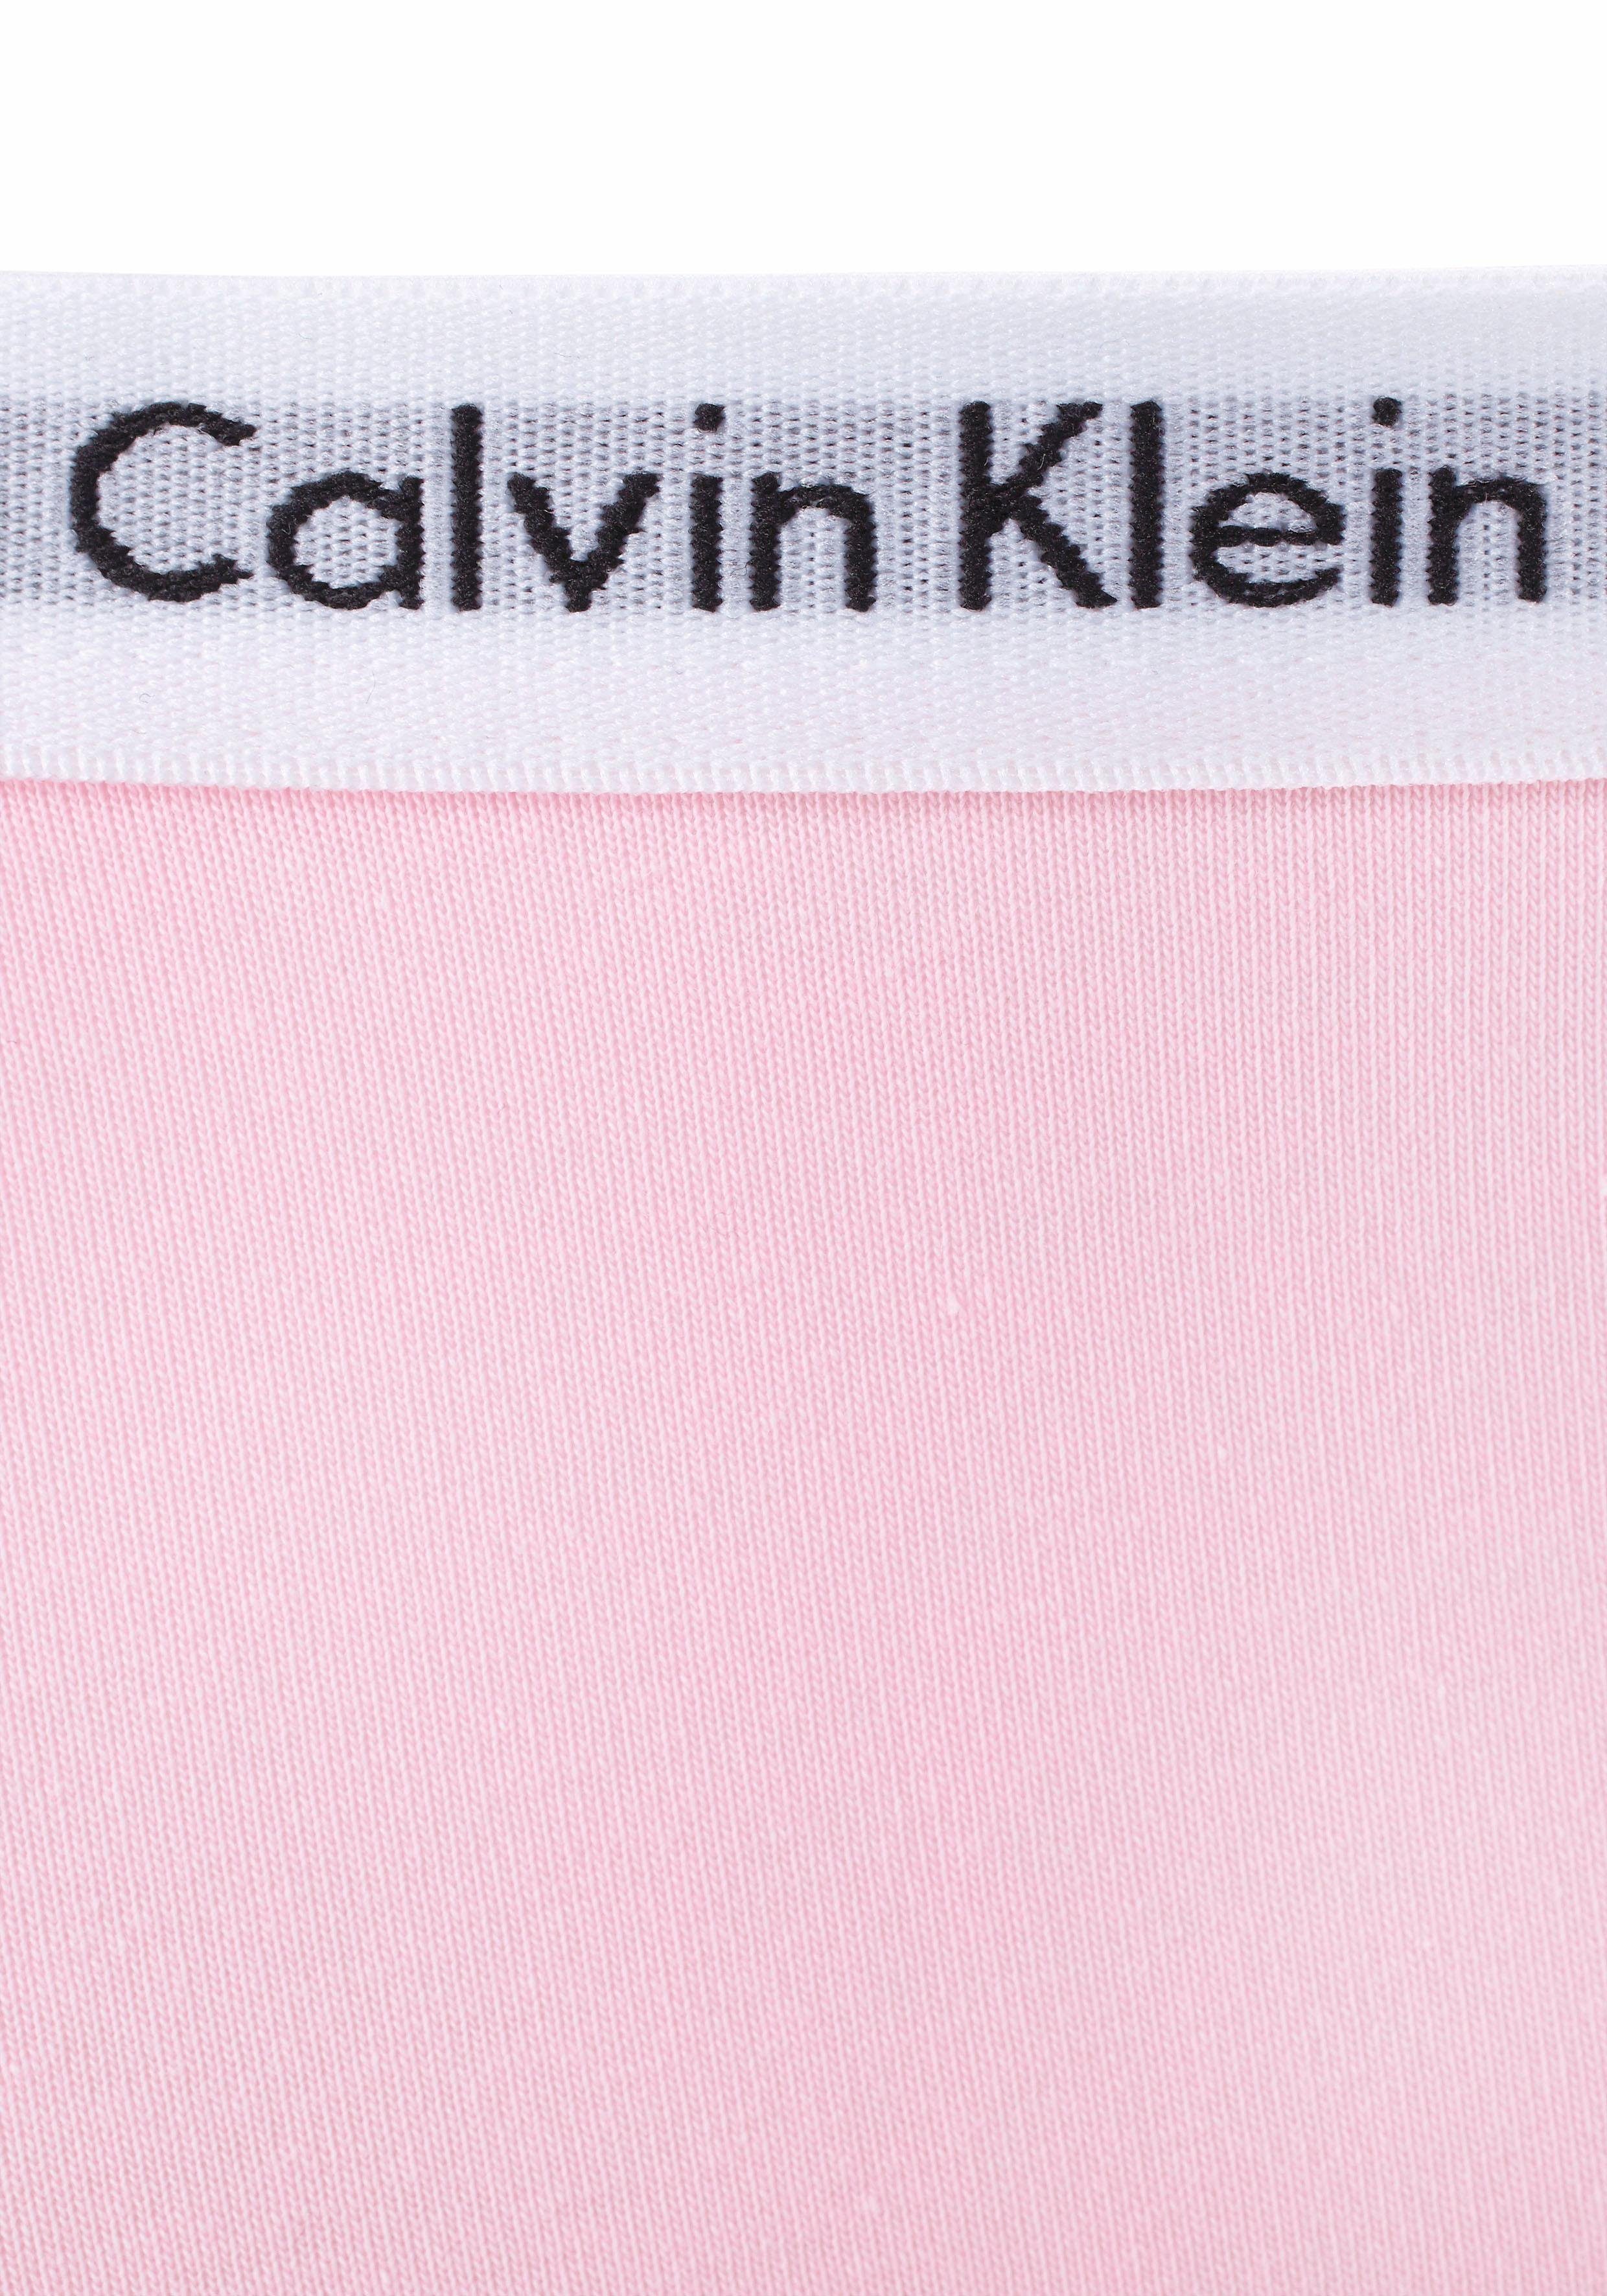 Calvin Klein Underwear Mädchen Panty mit (2-St) Junior Kinder MiniMe,für Kids Logobund